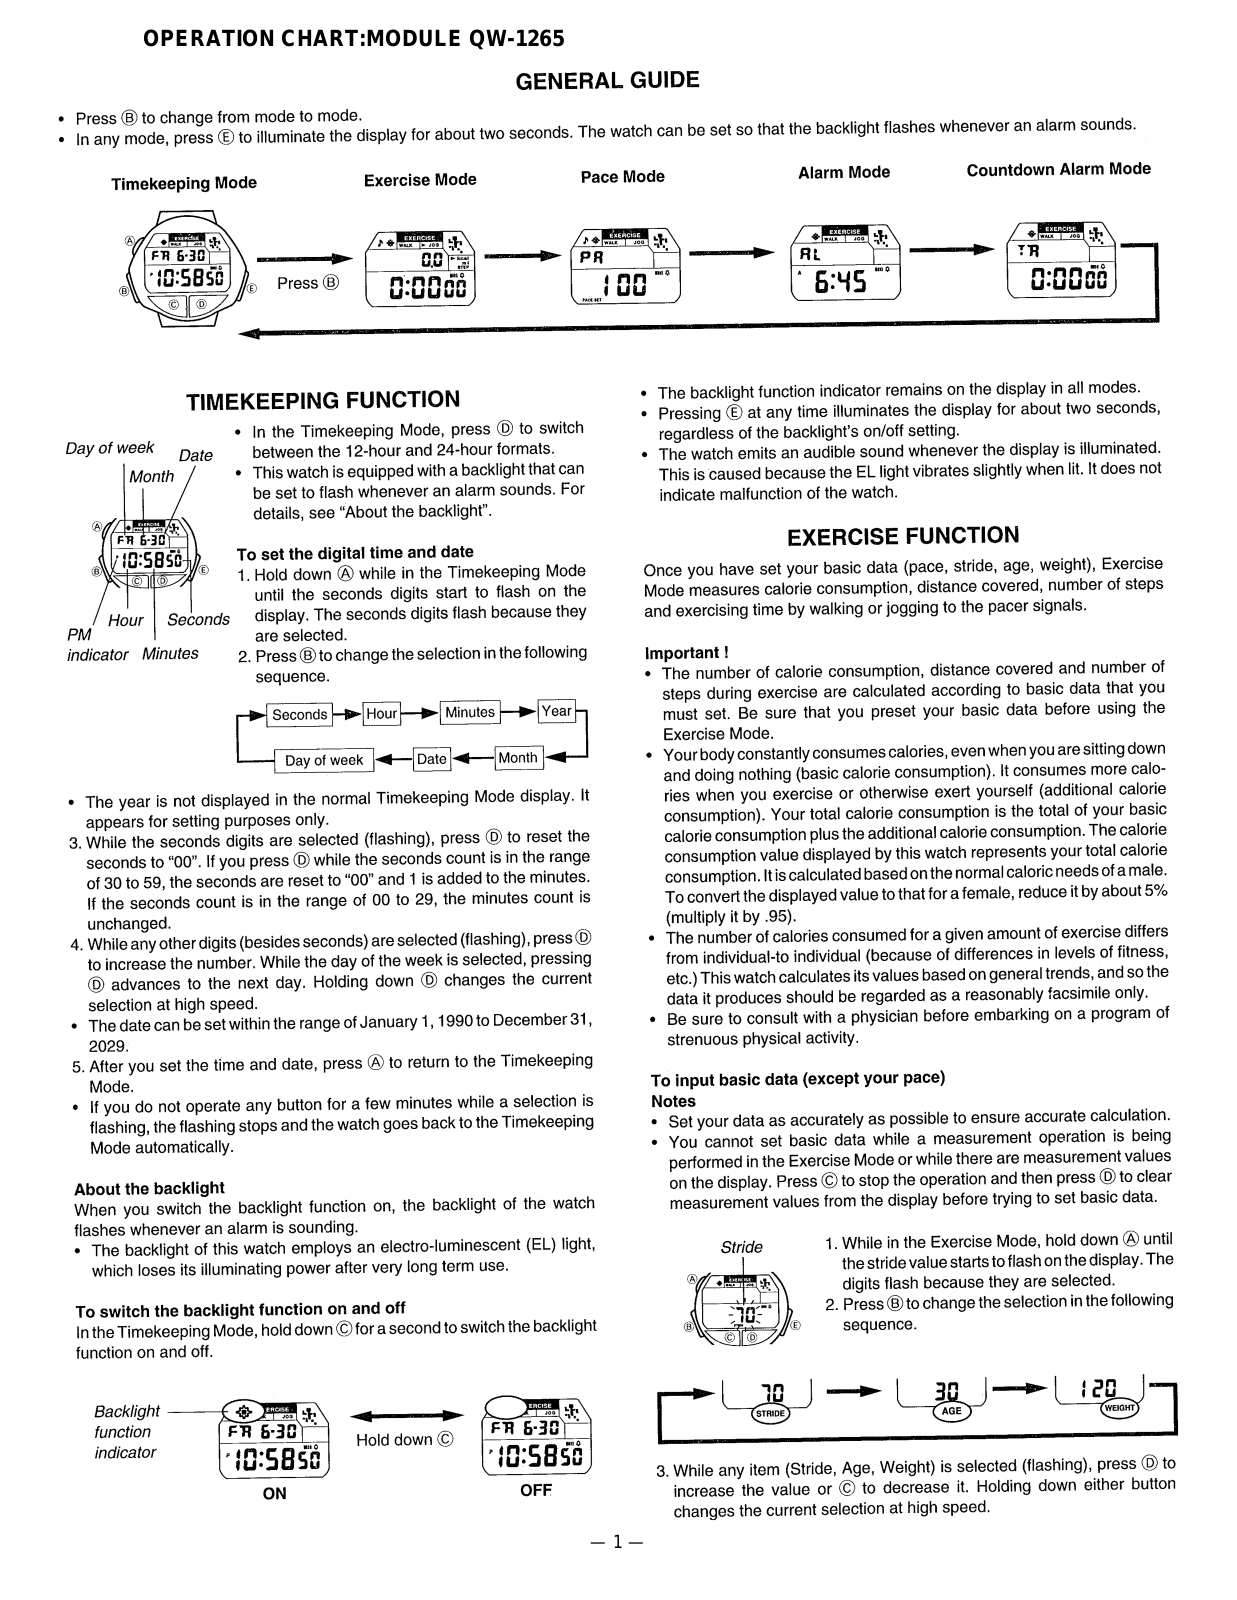 Casio 1265 Owner's Manual